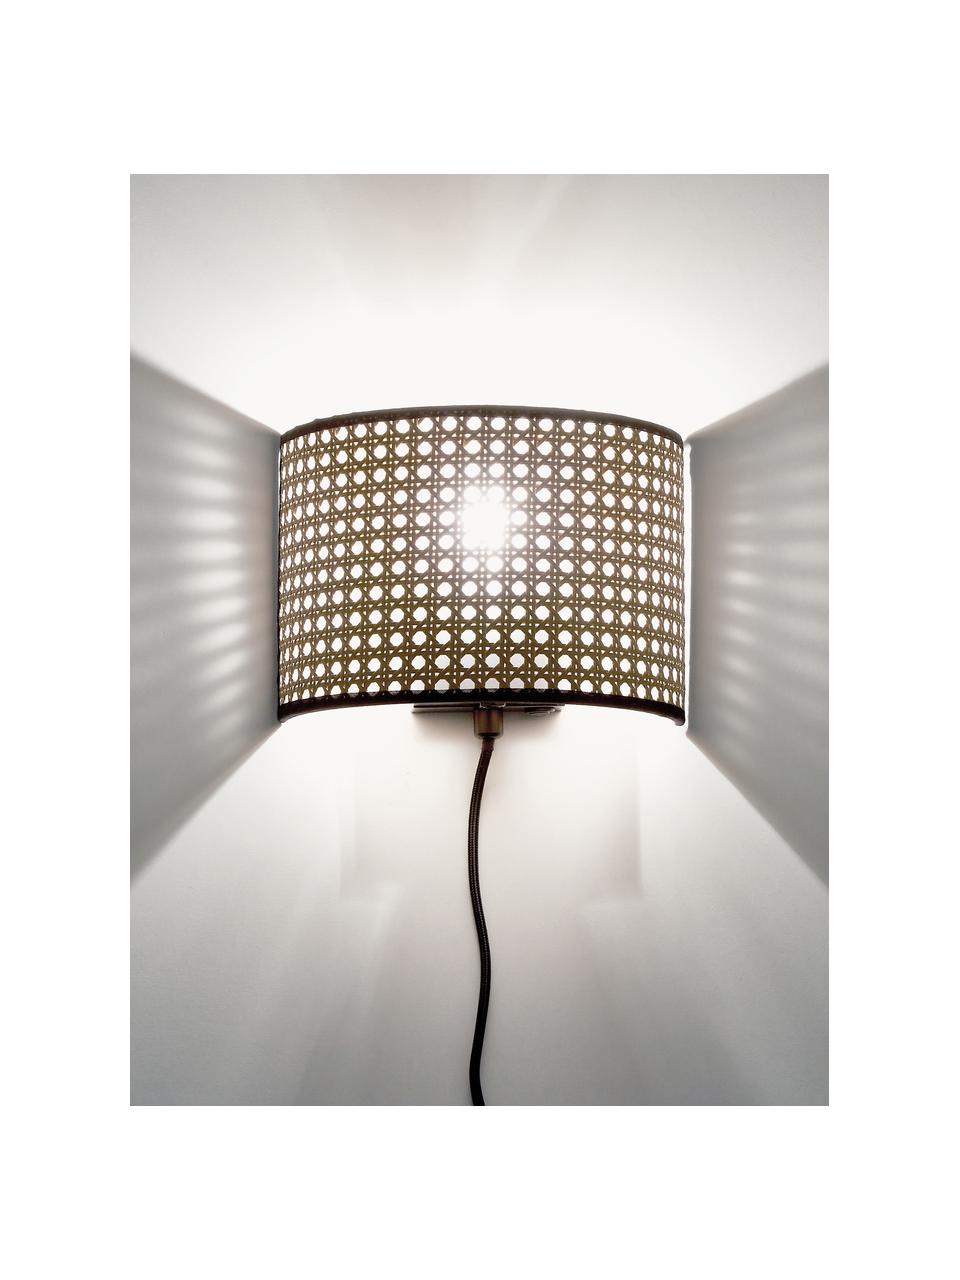 Wandlamp Vienna van Weens vlechtwerk met stekker, Lampenkap: kunststof, Lichtbruin, zwart, B 22 x H 16 cm